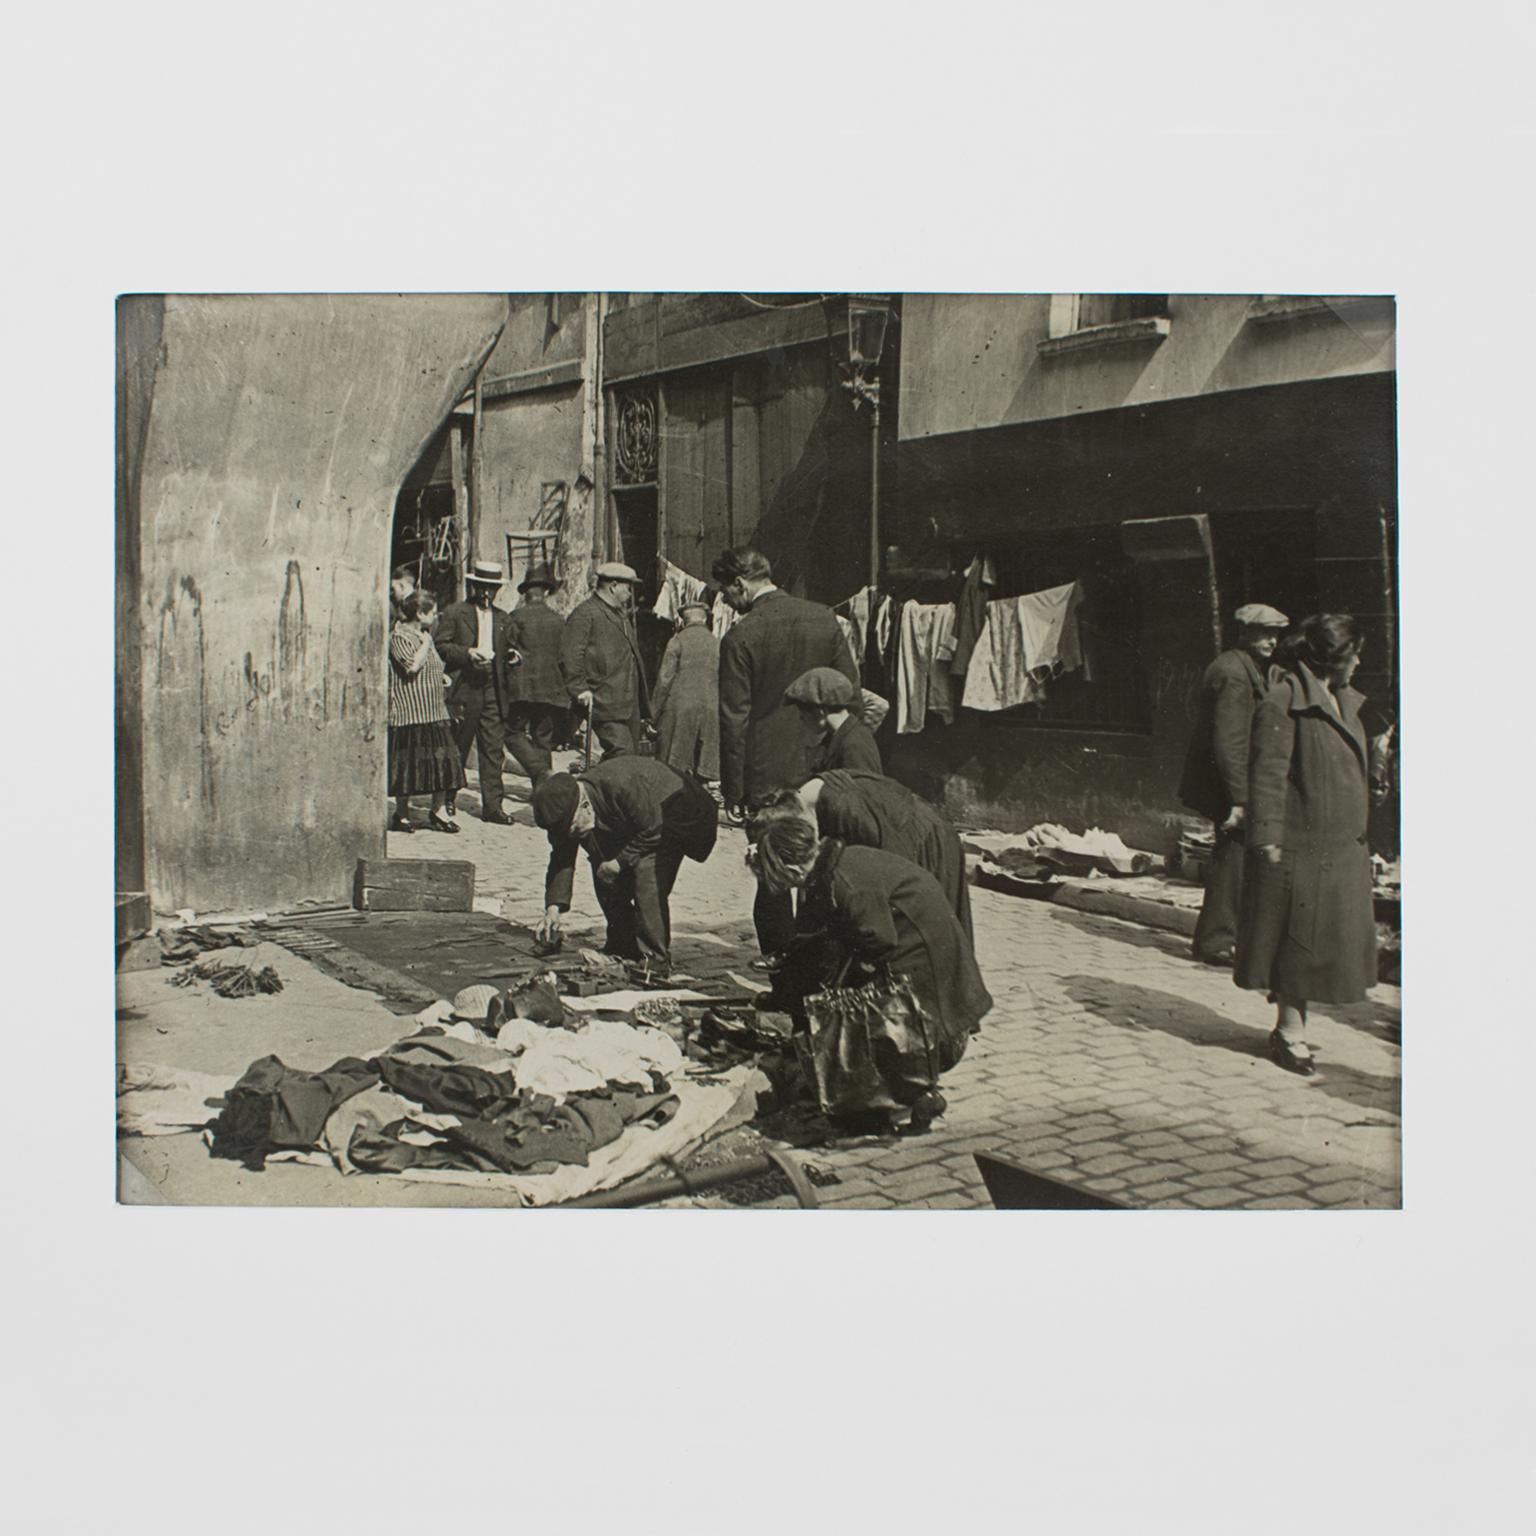 Une photographie originale unique en noir et blanc à la gélatine argentique de l'Agence Meurisse, Paris, vers 1930. Rue Saint Médard à Paris, un marché aux puces de rue.
Caractéristiques :
Photographie originale à la gélatine argentée non